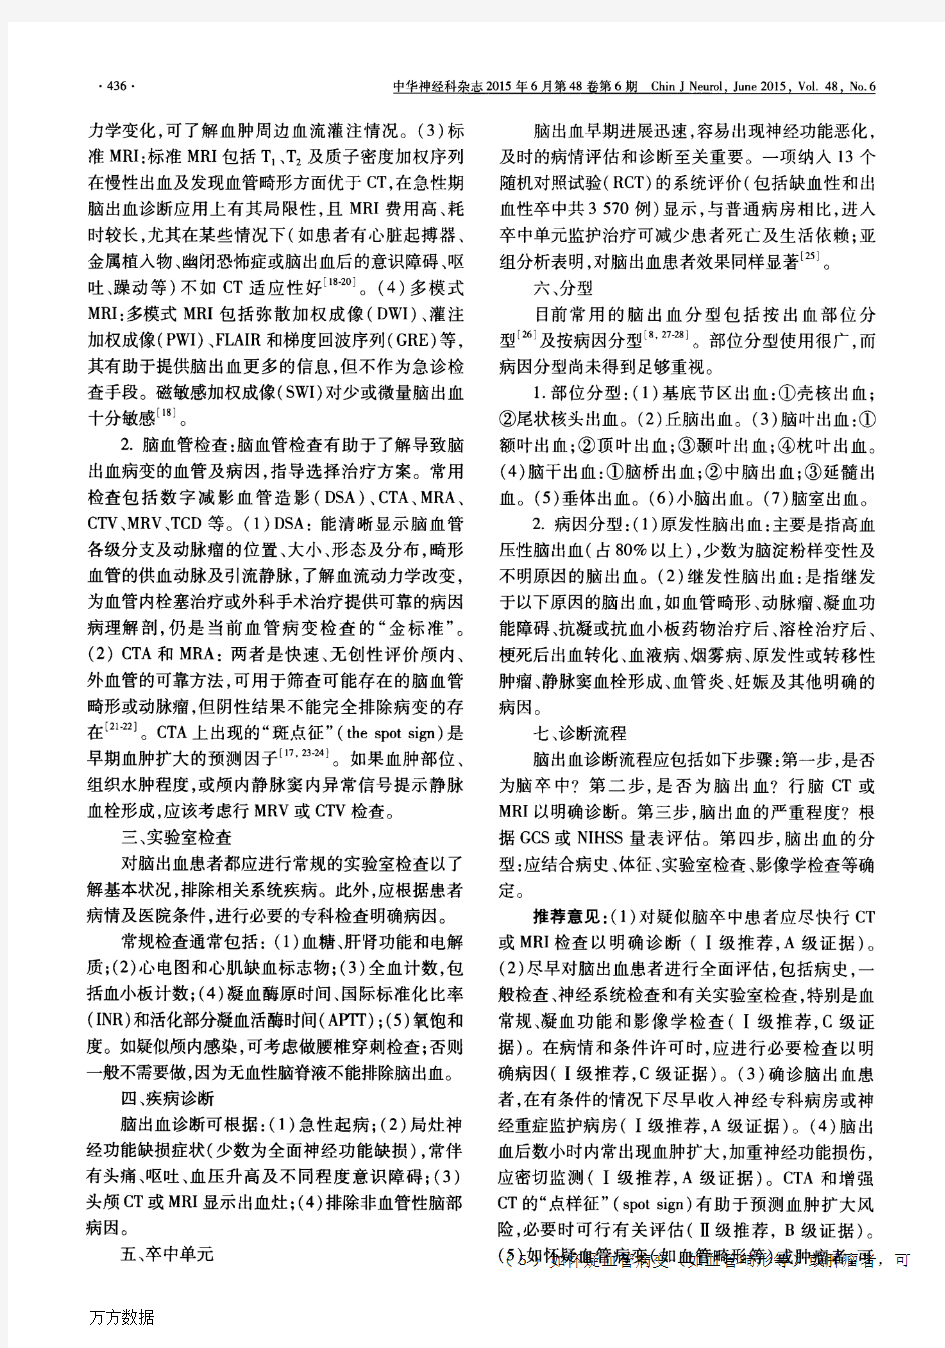 中国脑出血诊治指南(2014)